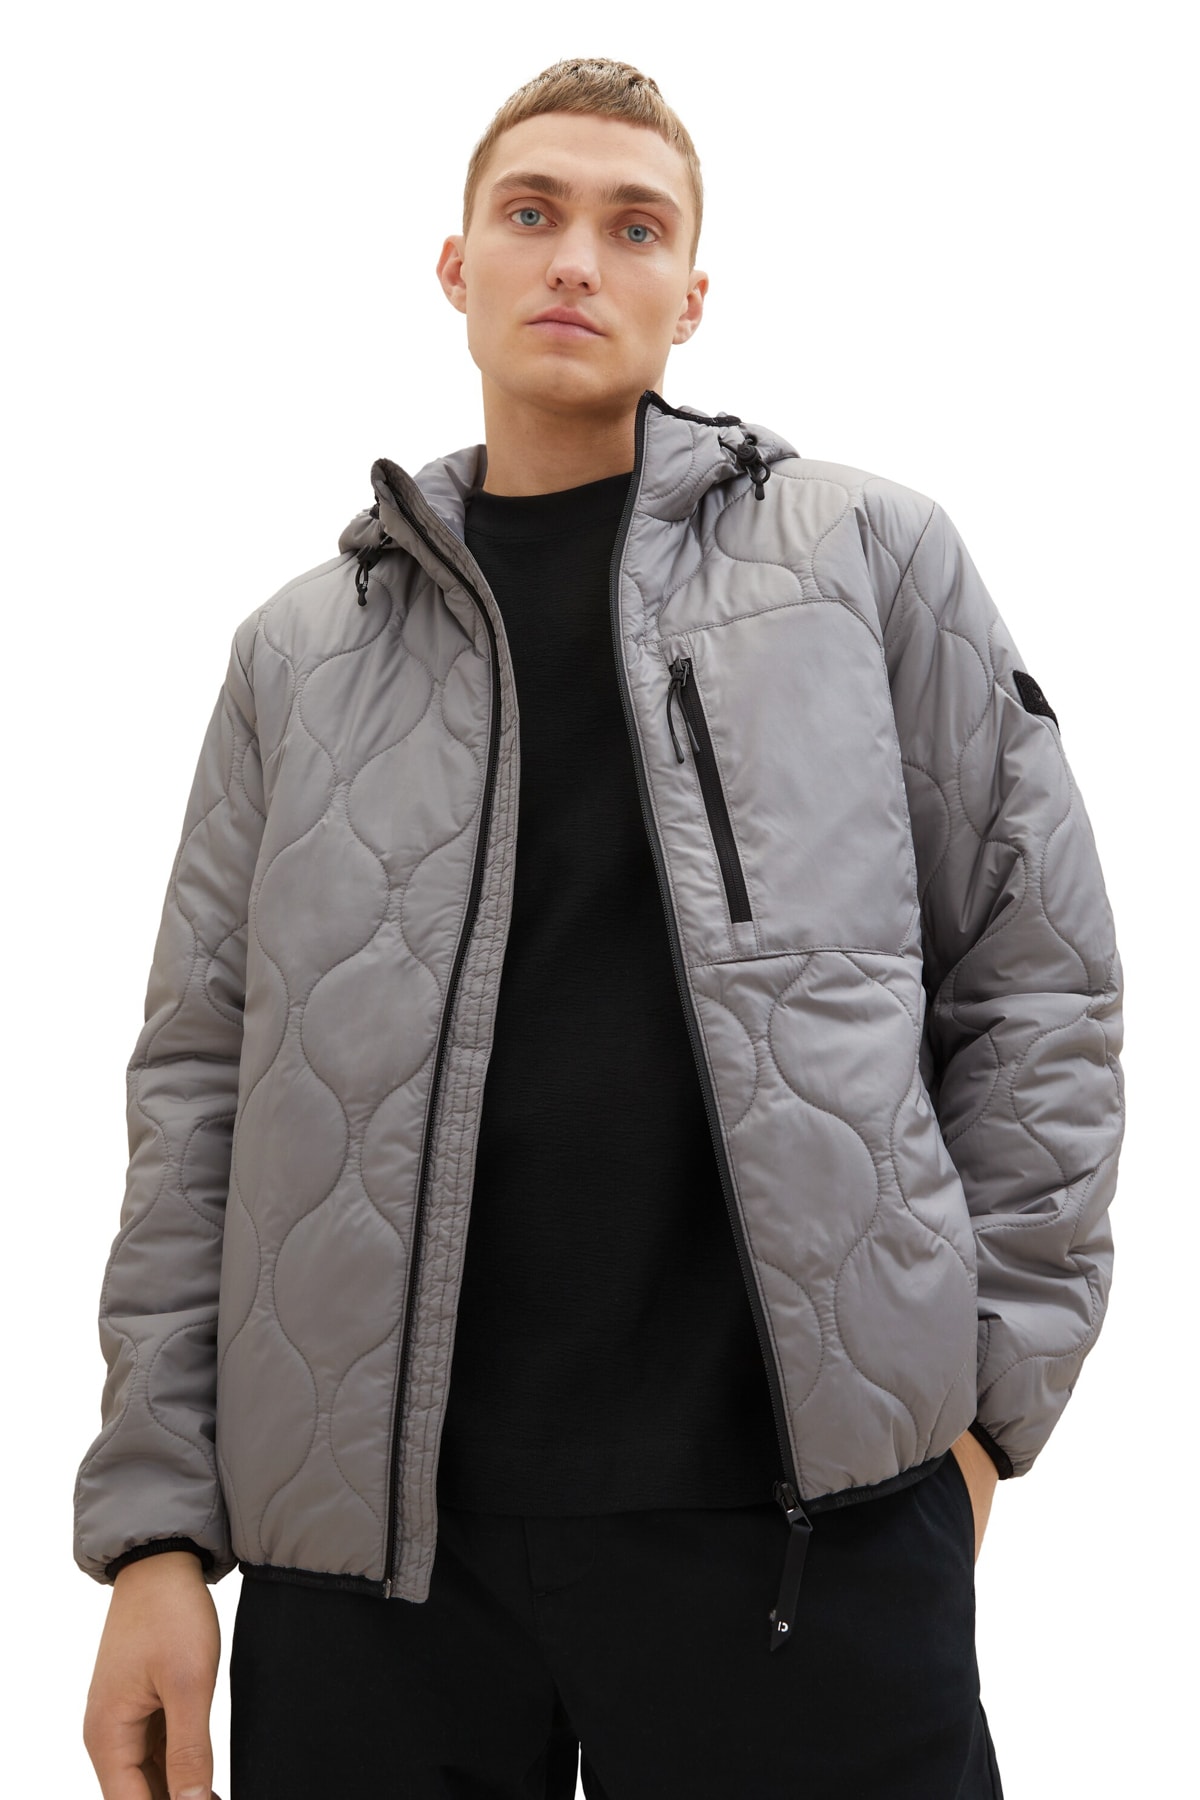 Зимняя куртка - Серая - Пуховик Tom Tailor Denim, серый толстовка tom tailor размер xl серый